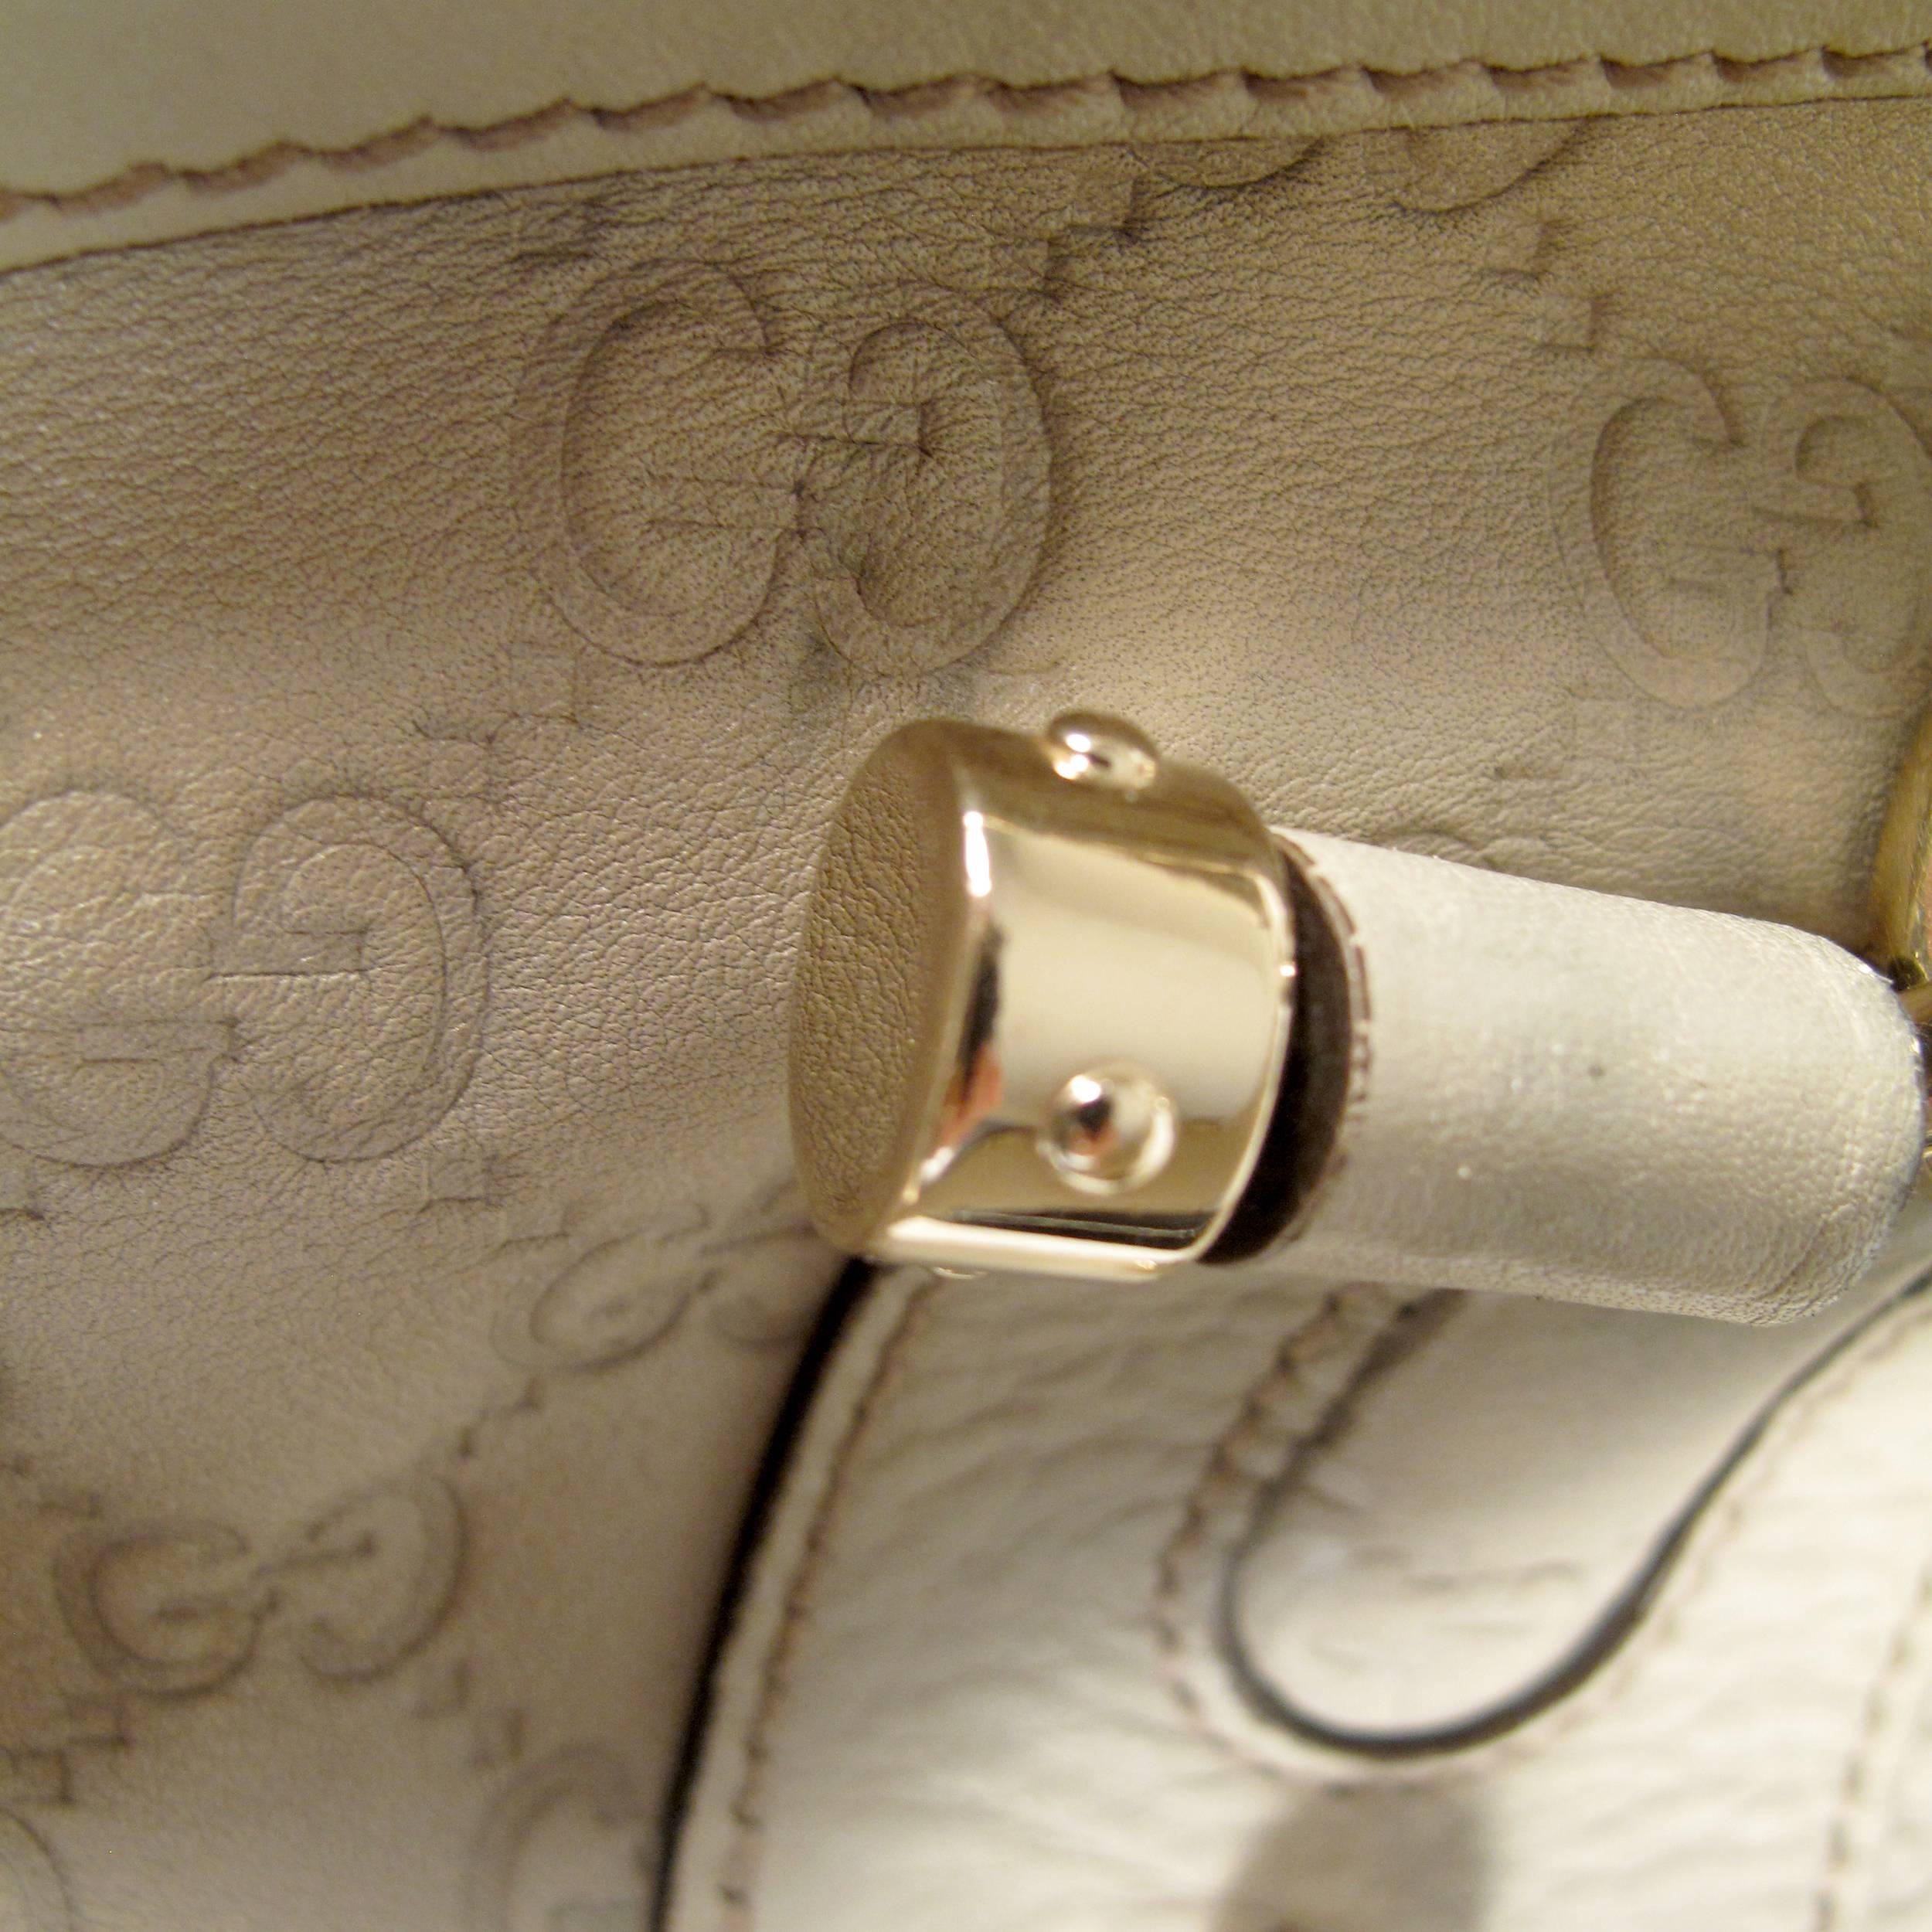 Gucci Bamboo Leather Monogram Shoulder Bag - Tan Beige GG Gold Satchel Handbag 2